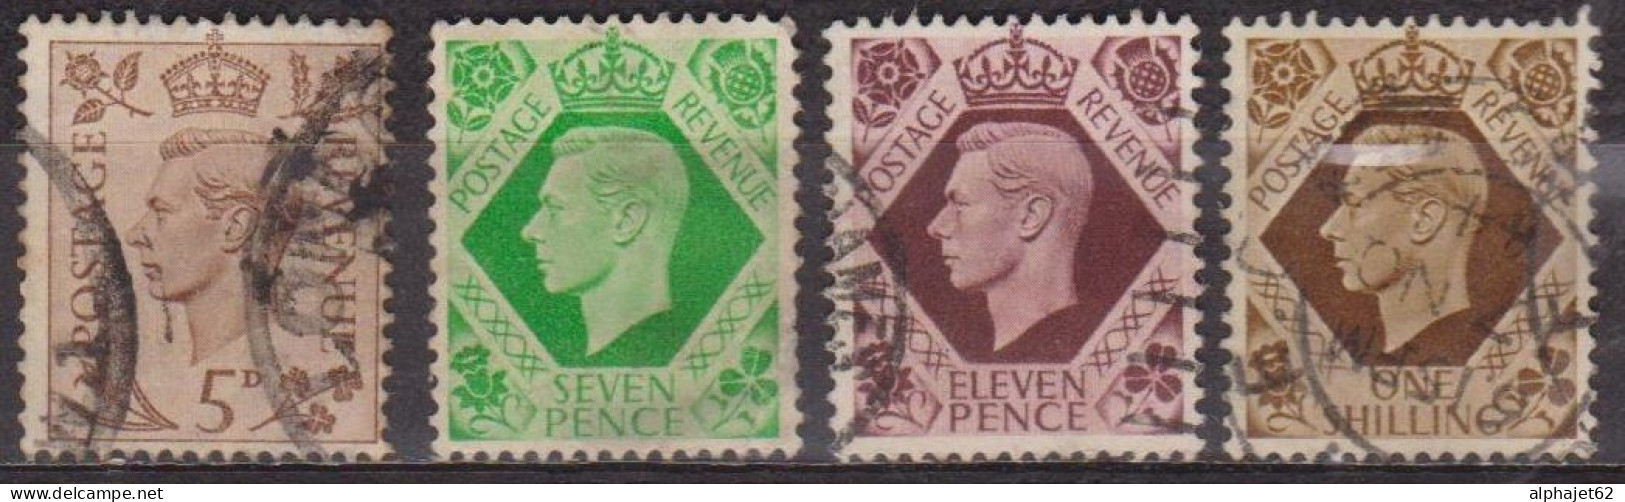 Avènement Du Roi George VI - GRANDE BRETAGNE - 1937 - N° 216-218-221A-222 - Usati